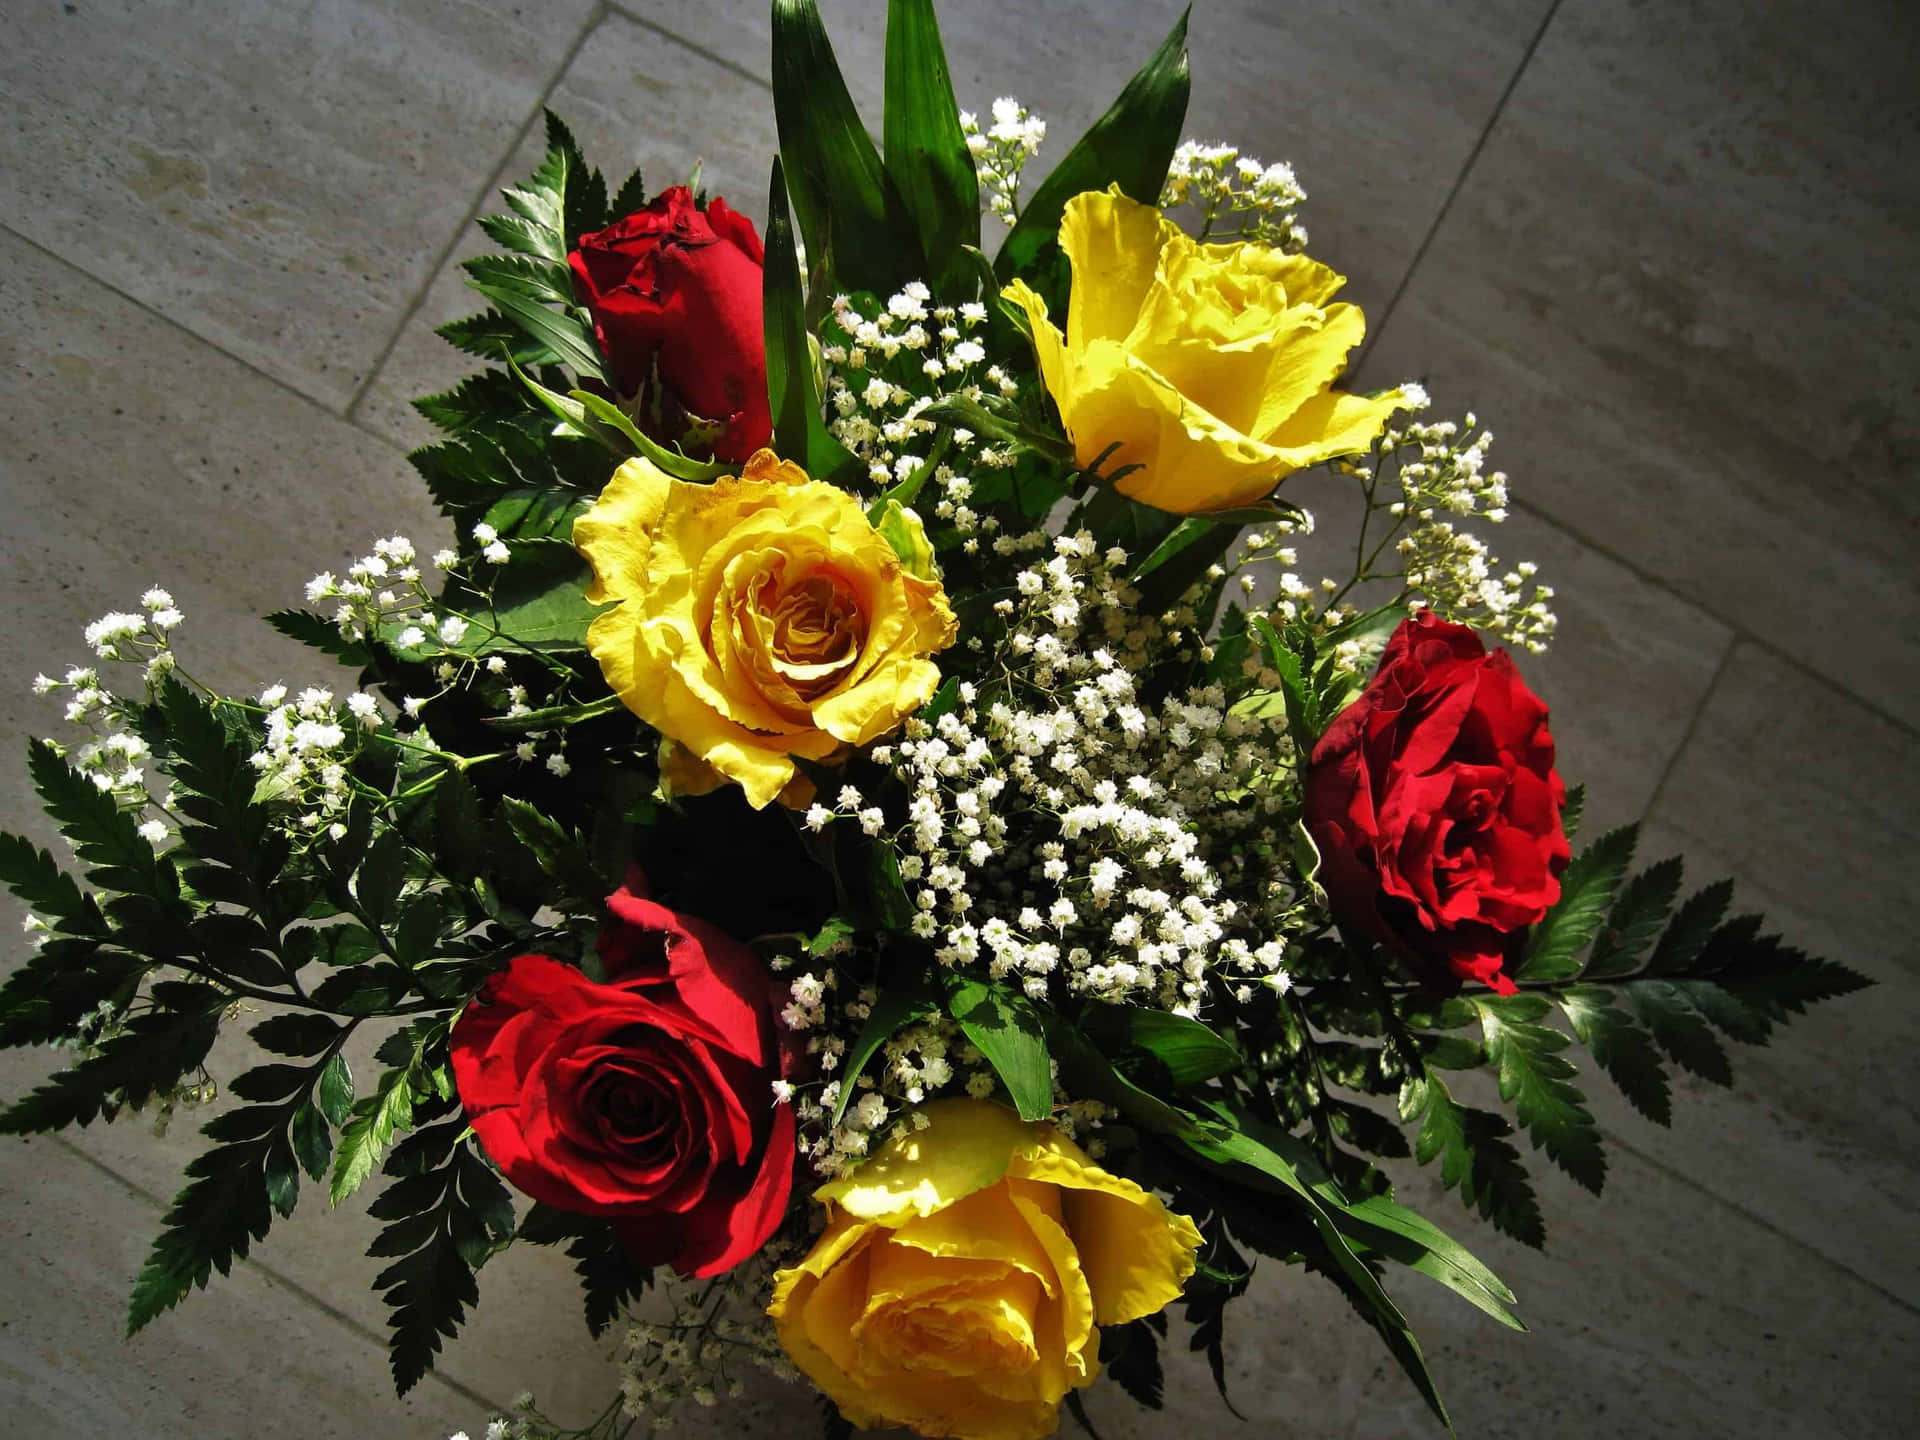 Dillocon Amore Artigianale - Un Adorabile Bouquet Di Fiori